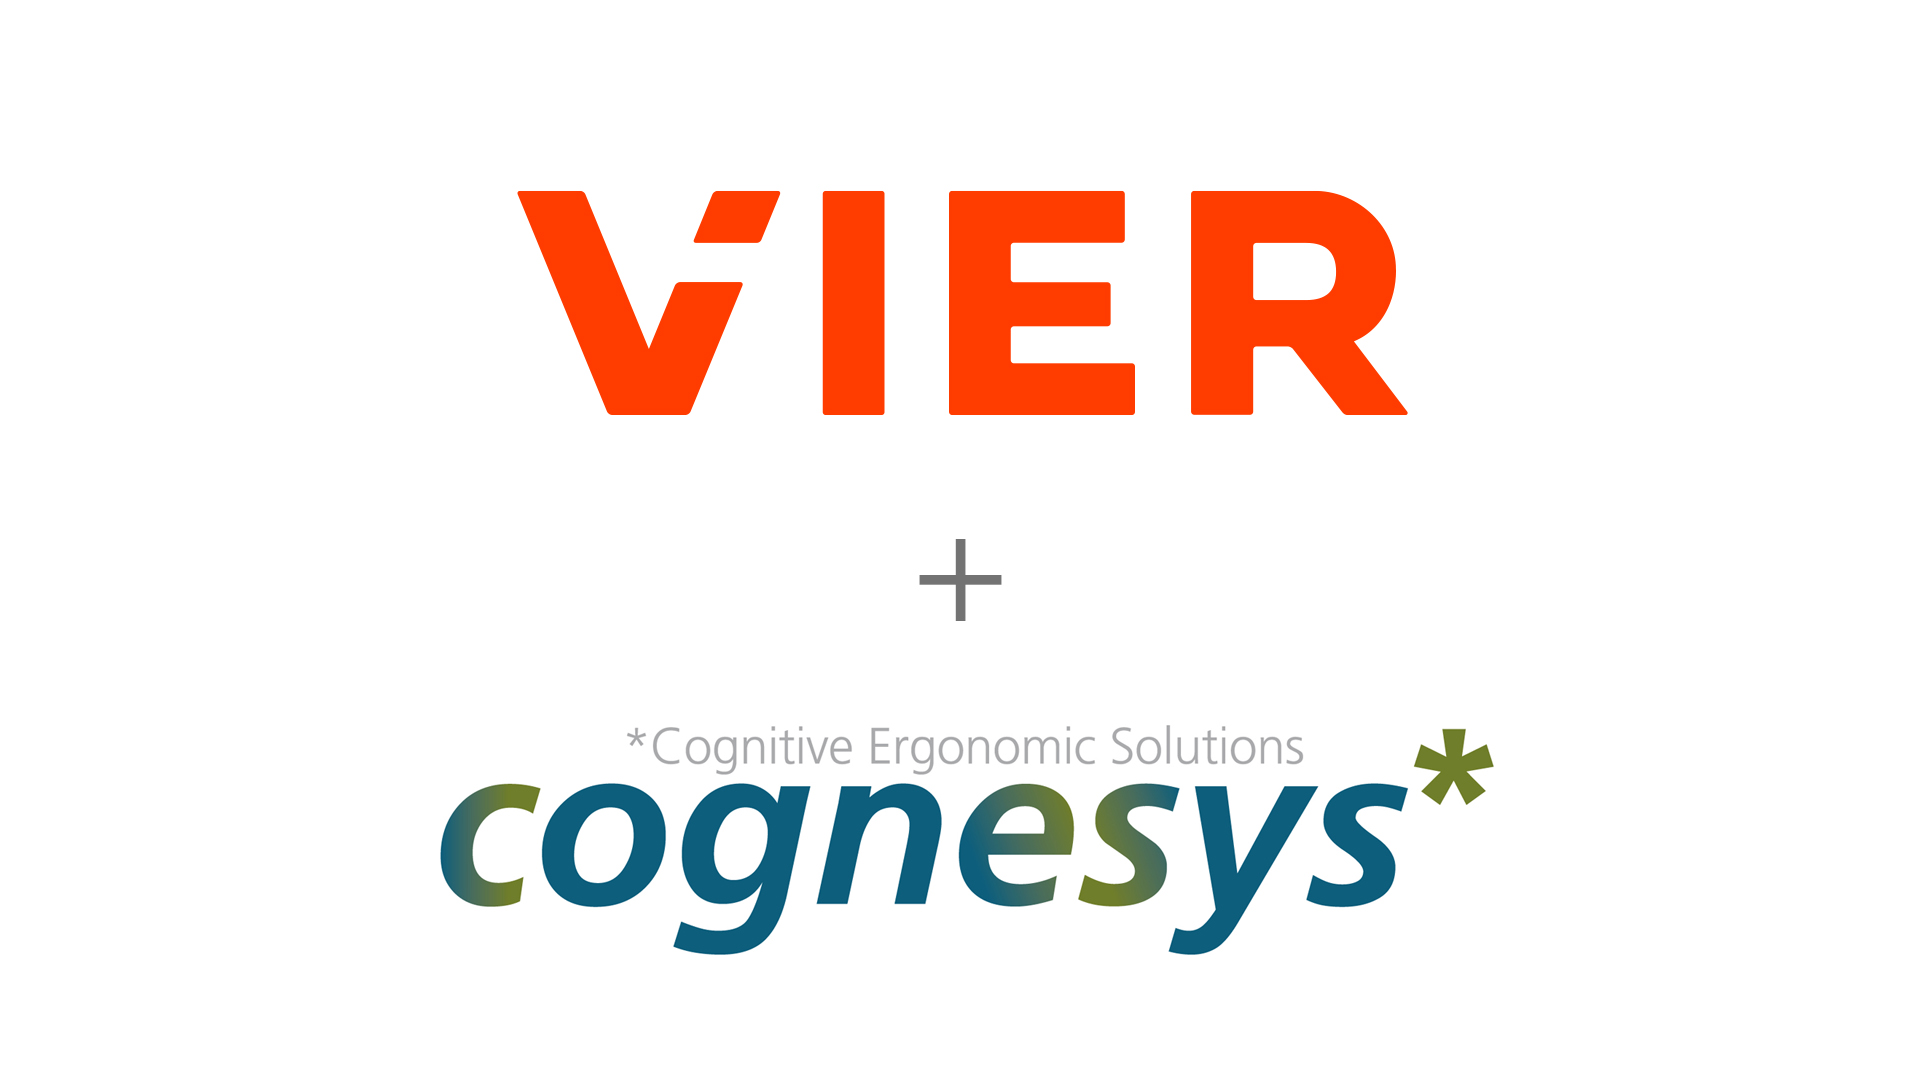 Cognesys wird Teil der VIER GmbH